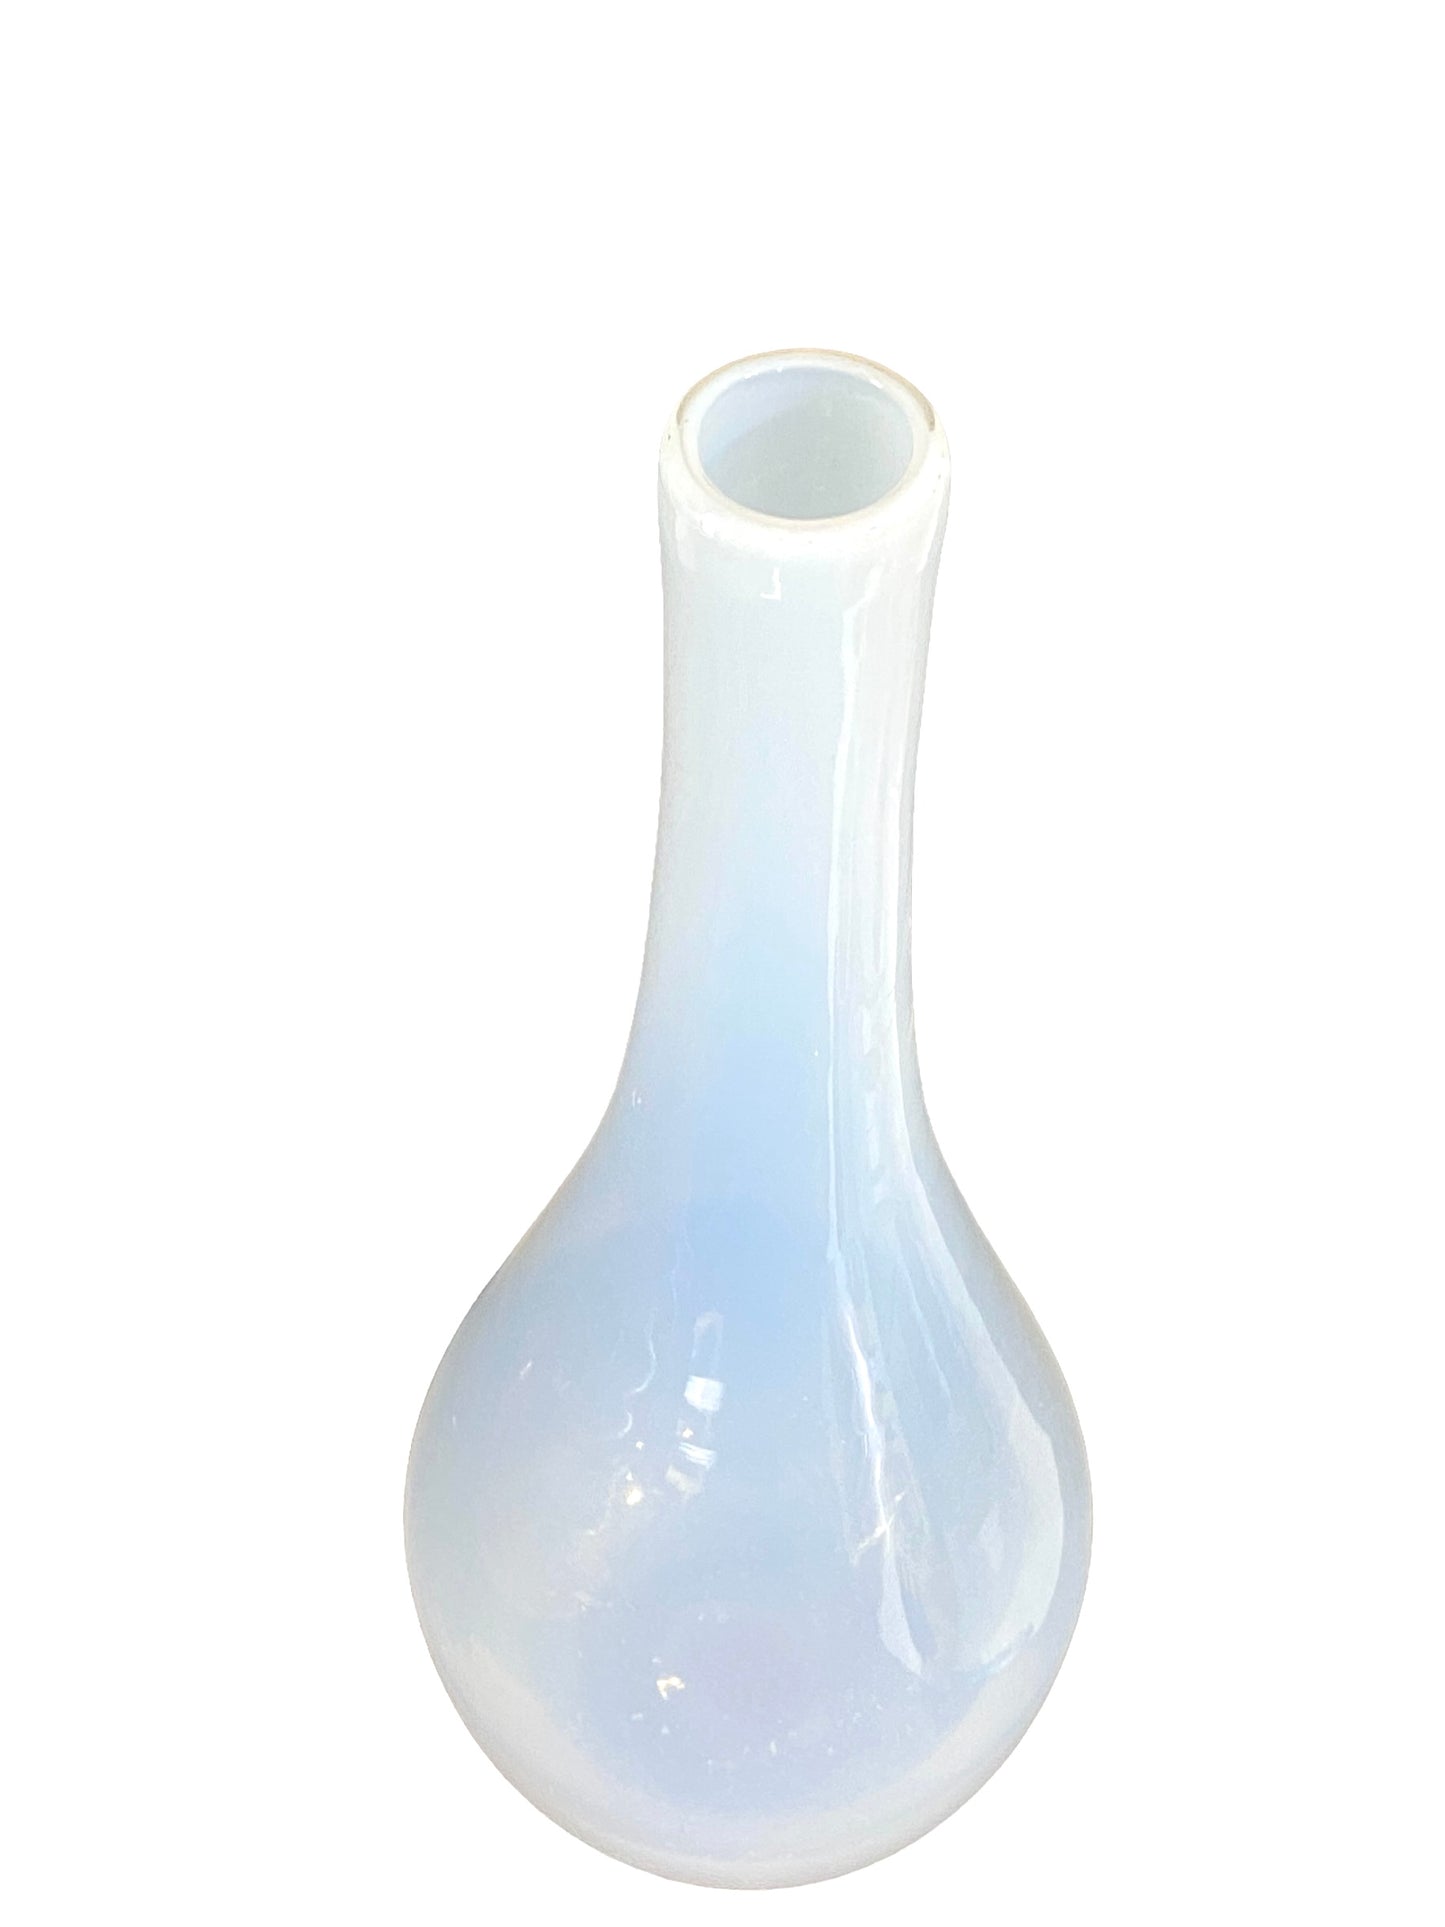 #4617 Onion shape White Glass Vase 19.5" H